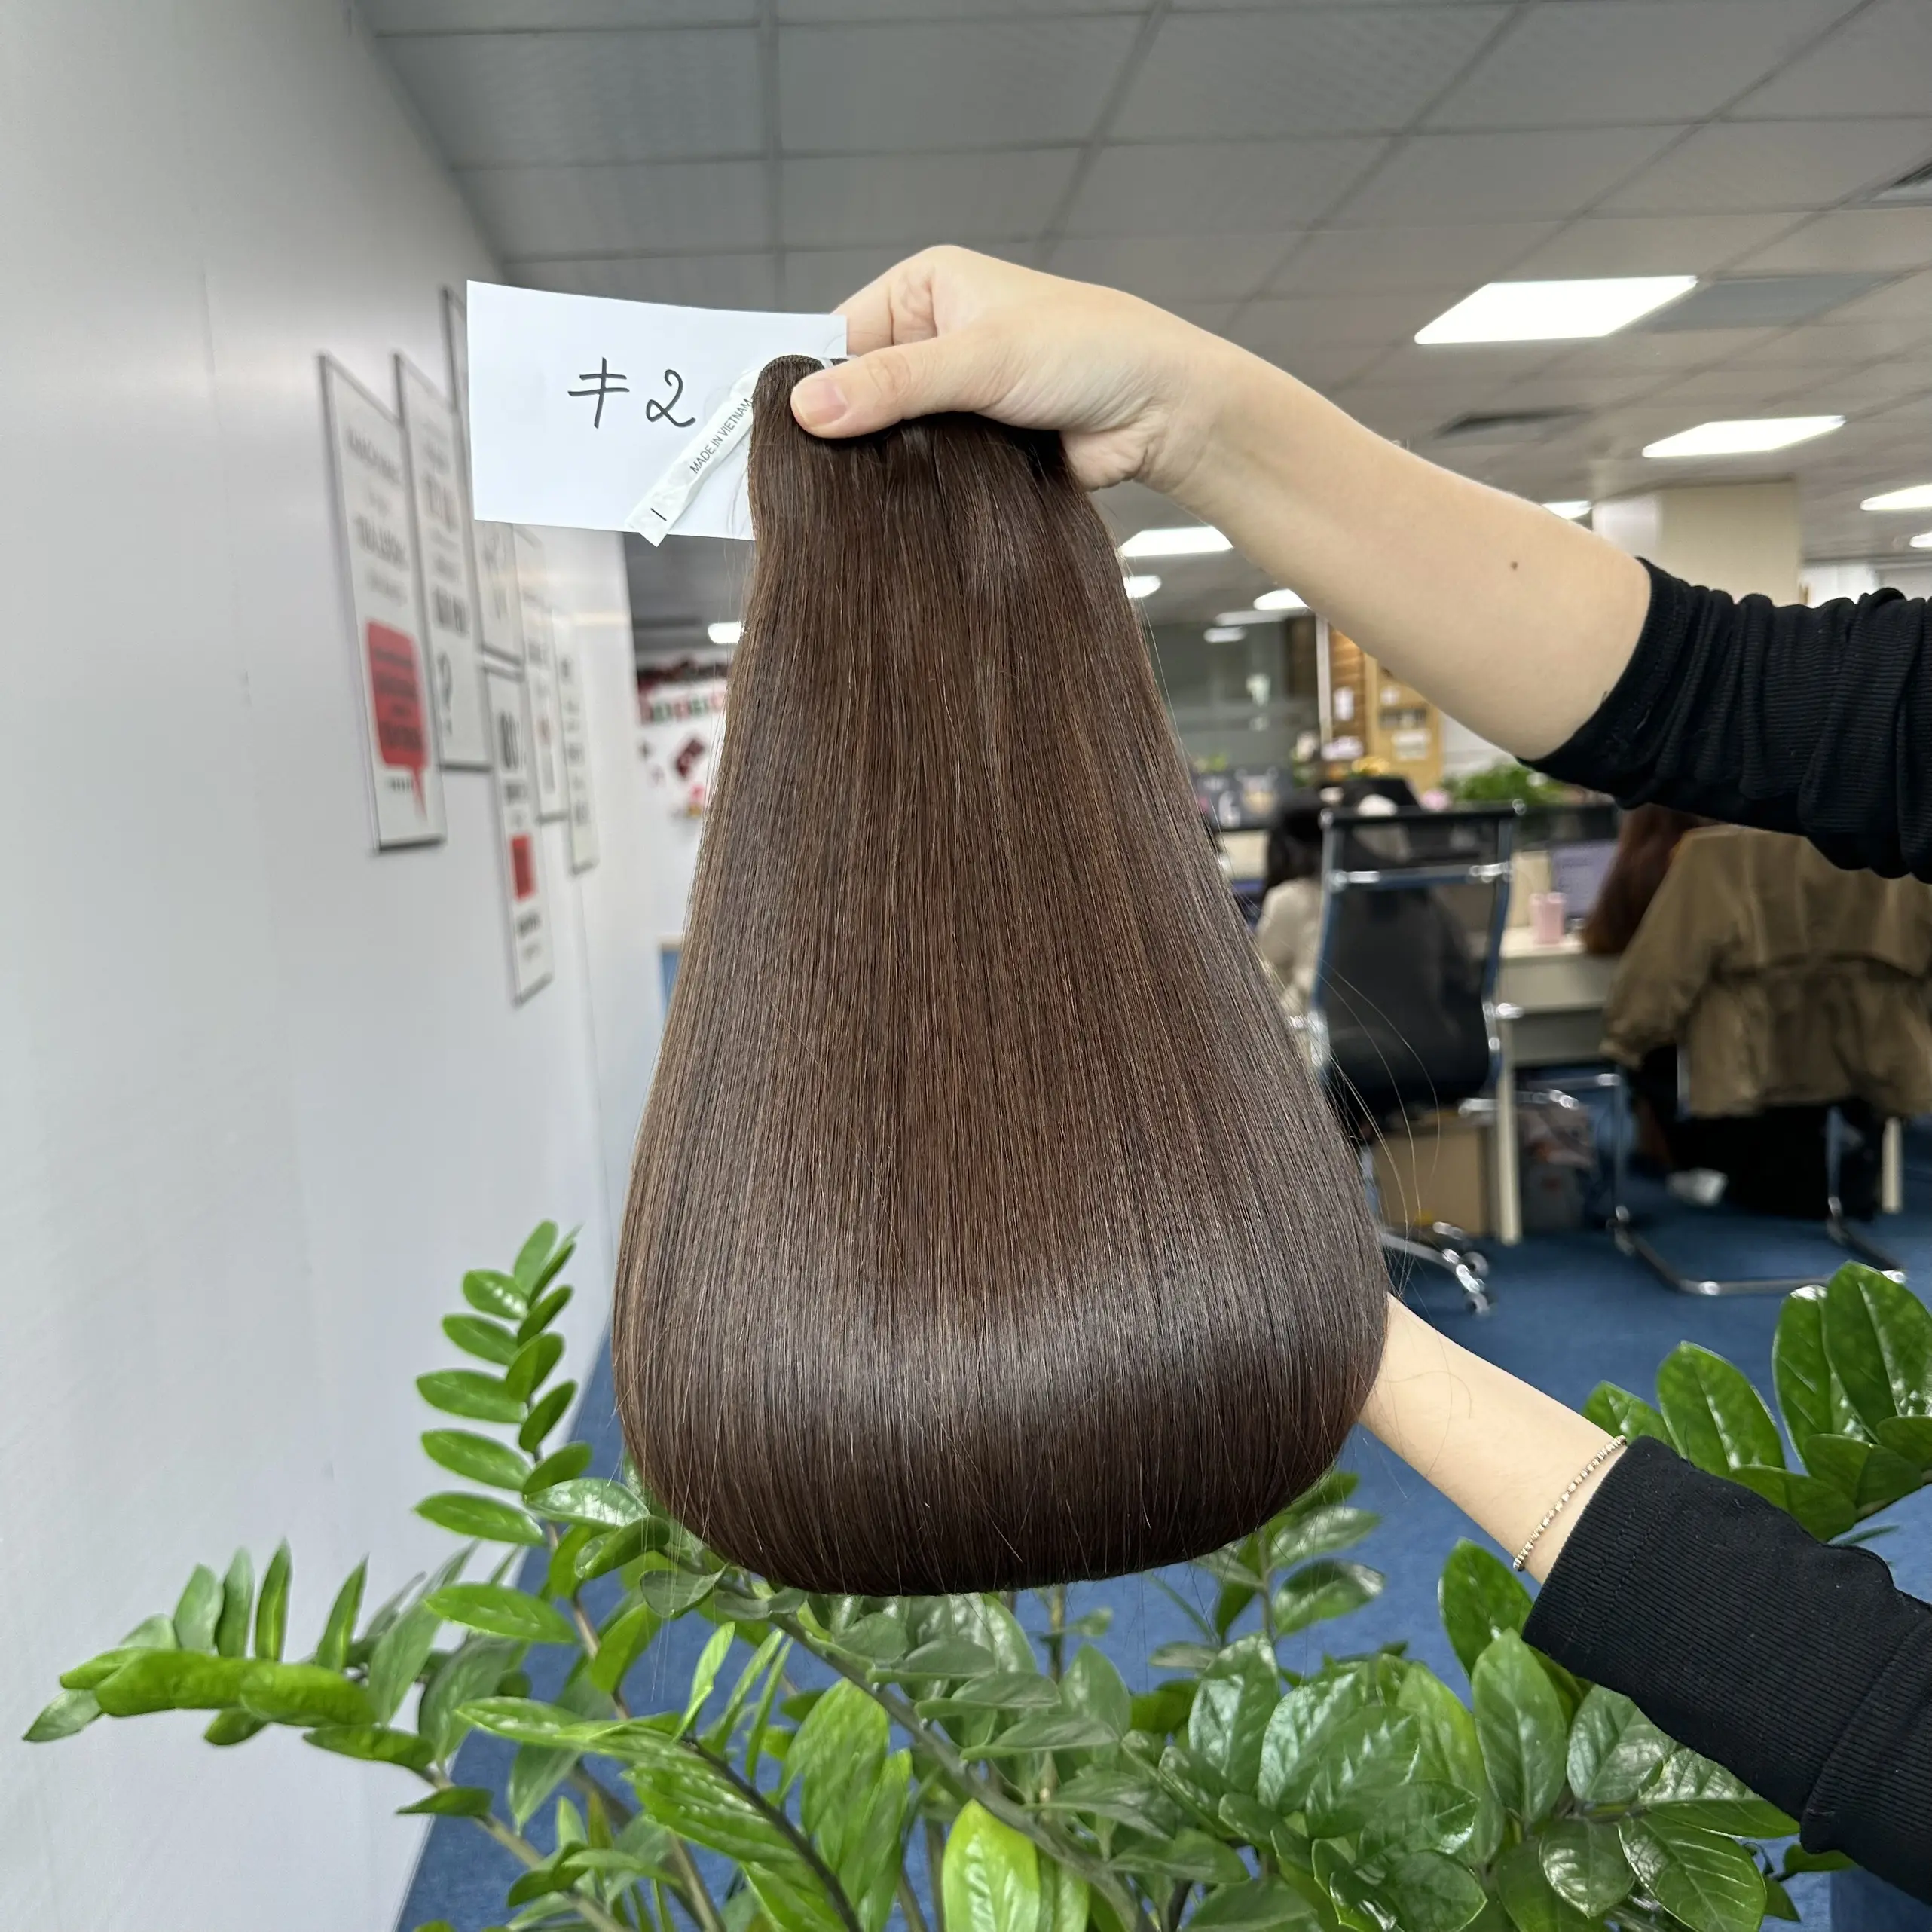 Capelli di alta qualità grezzi vietnamiti colore marrone estensioni dei capelli la migliore qualità ordine del campione Beladyhair company